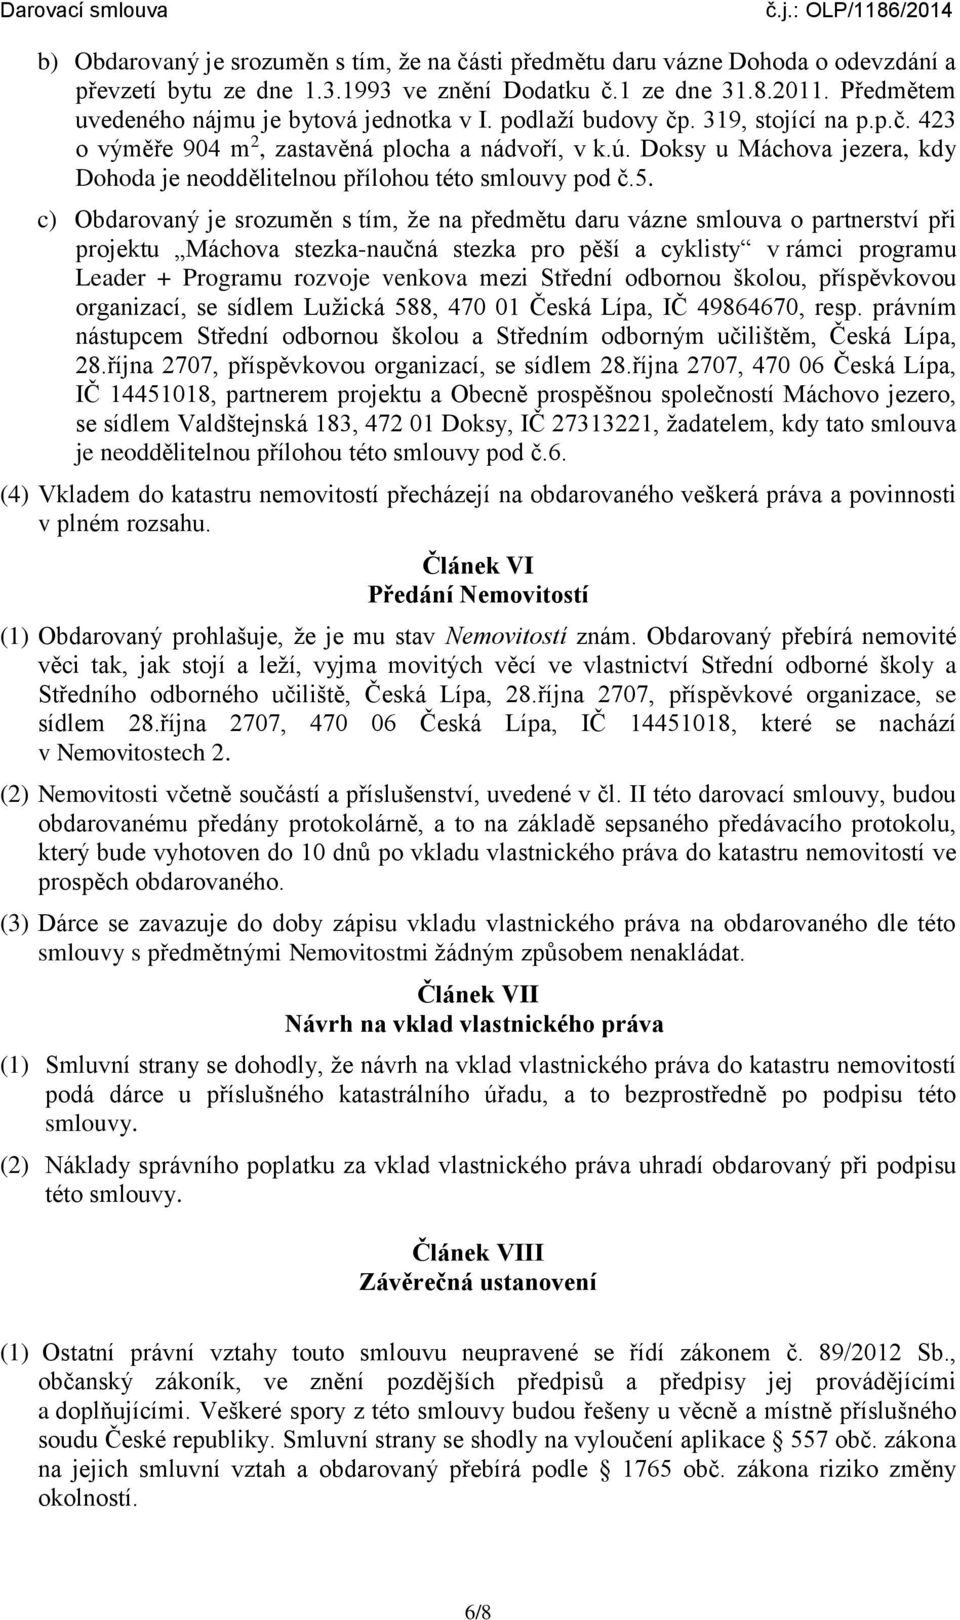 Doksy u Máchova jezera, kdy Dohoda je neoddělitelnou přílohou této smlouvy pod č.5.